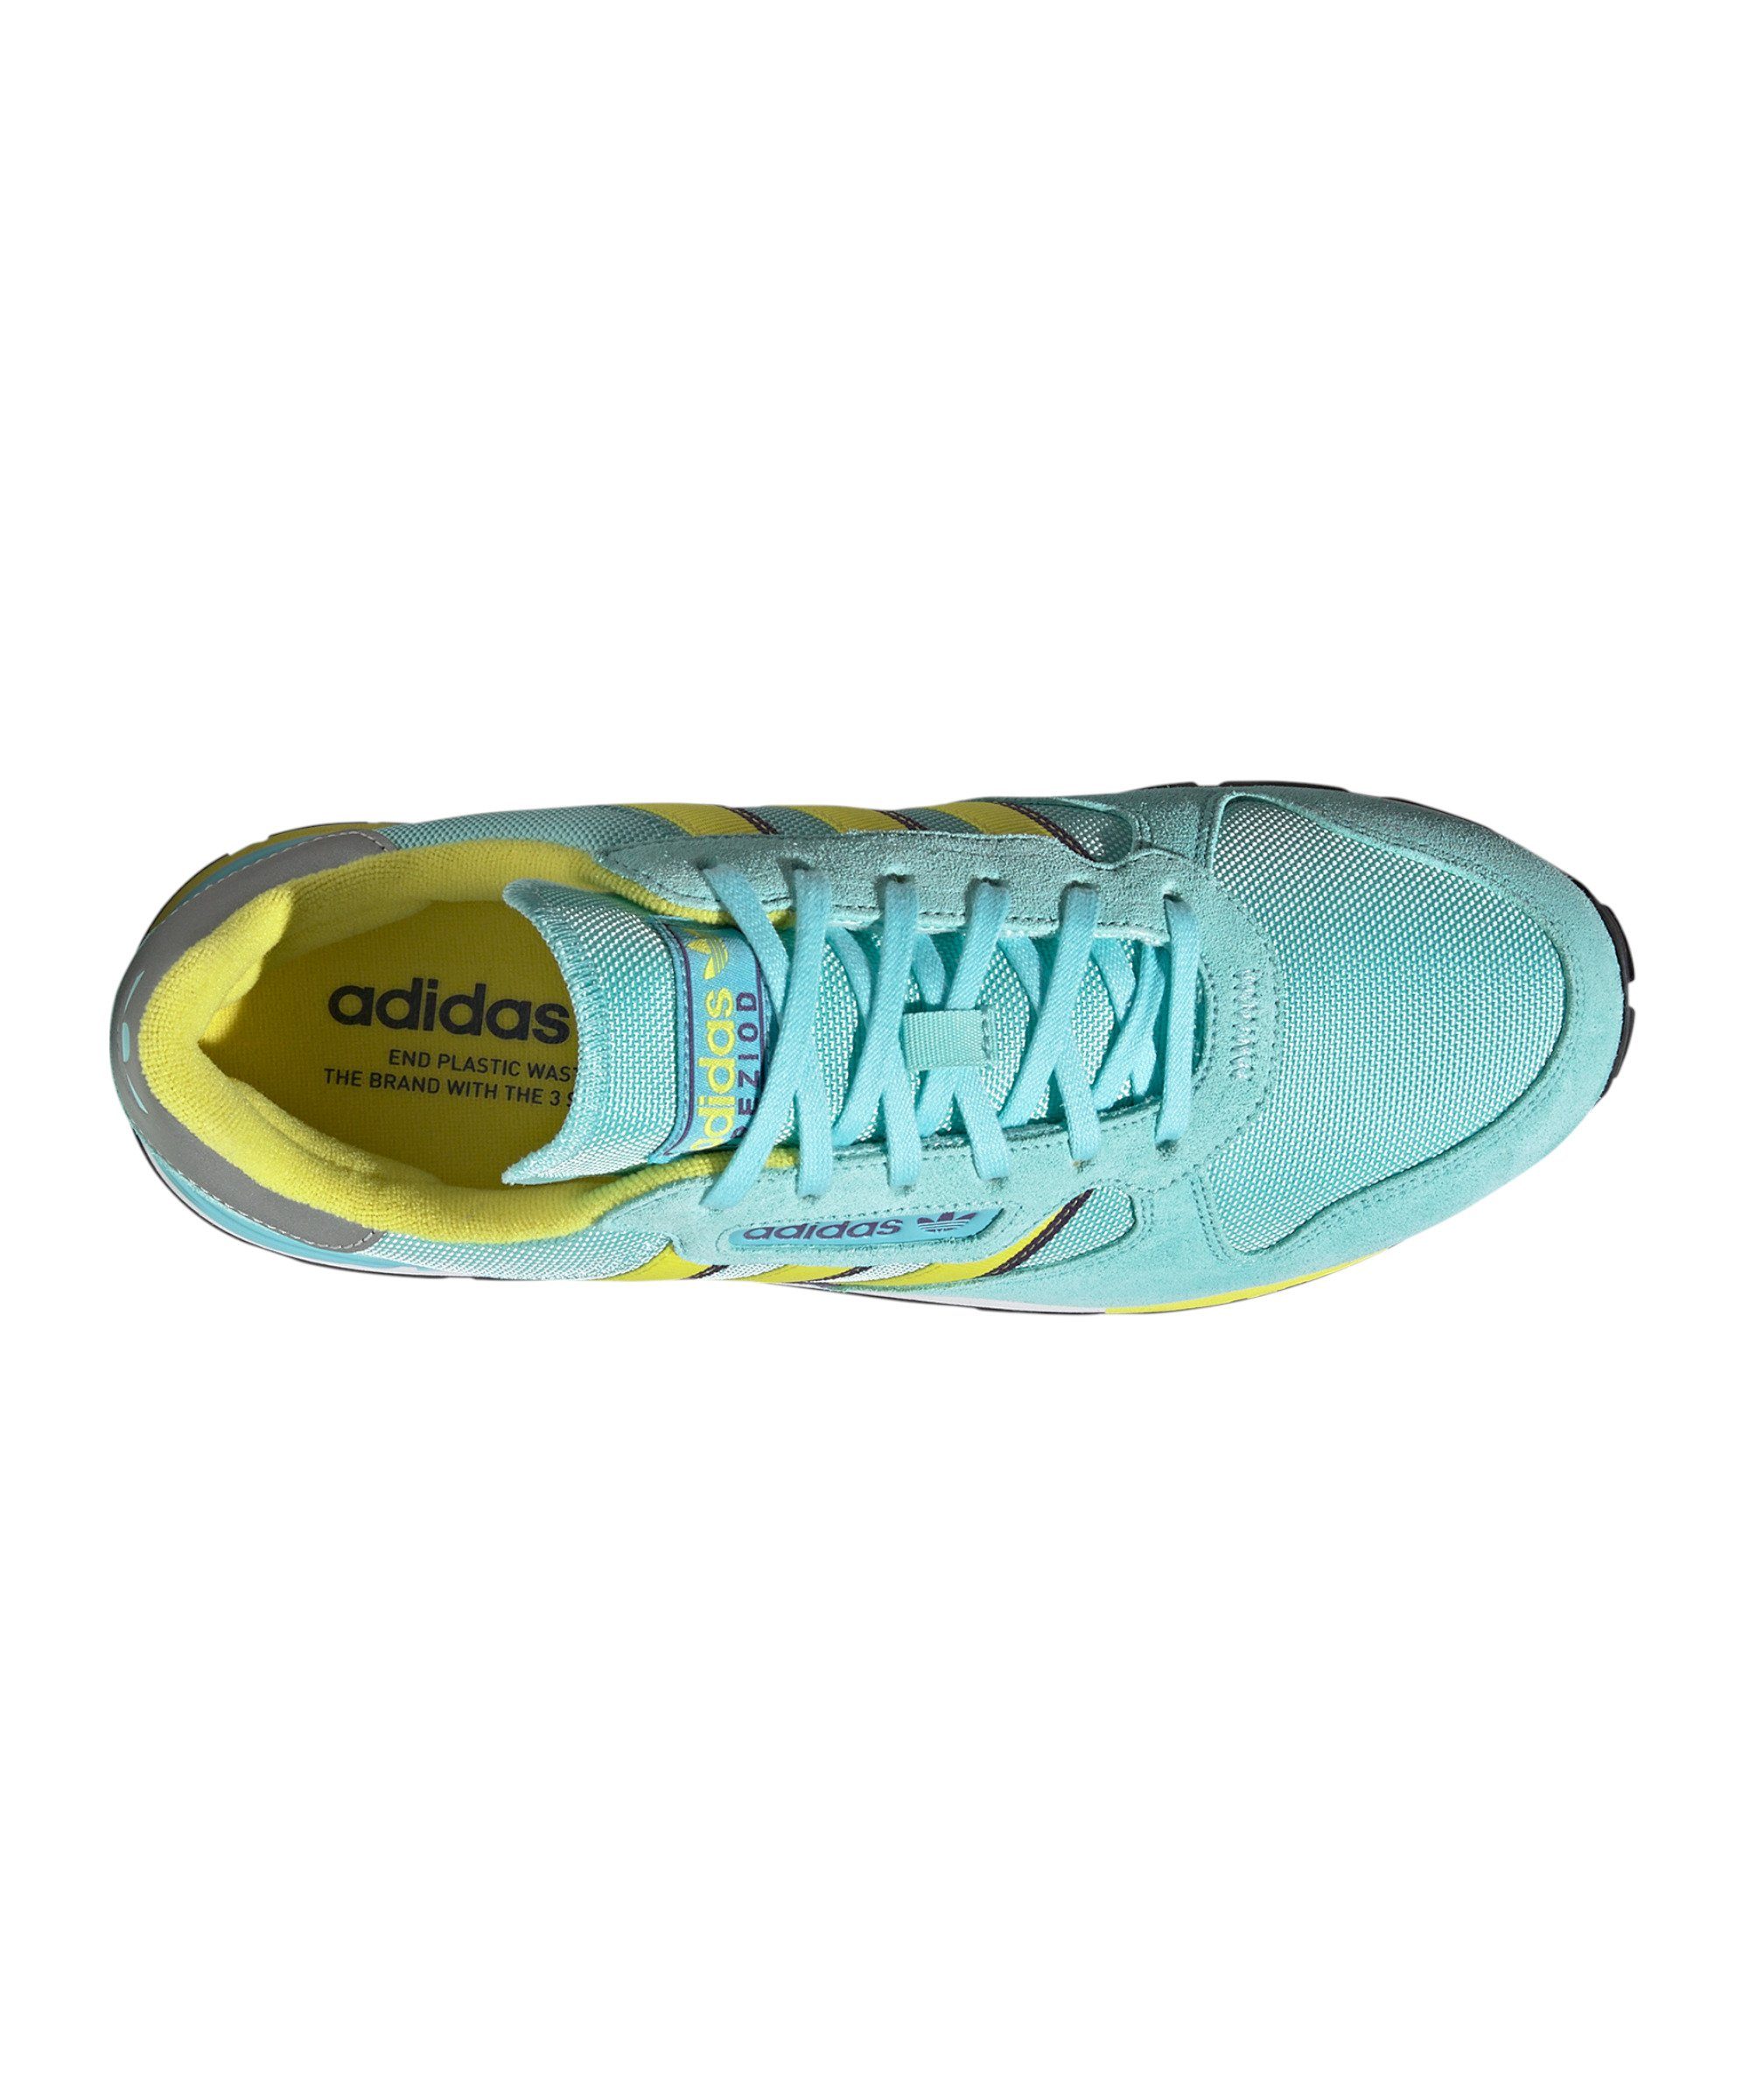 Originals Treziod Sneaker blaugelblila 2 adidas